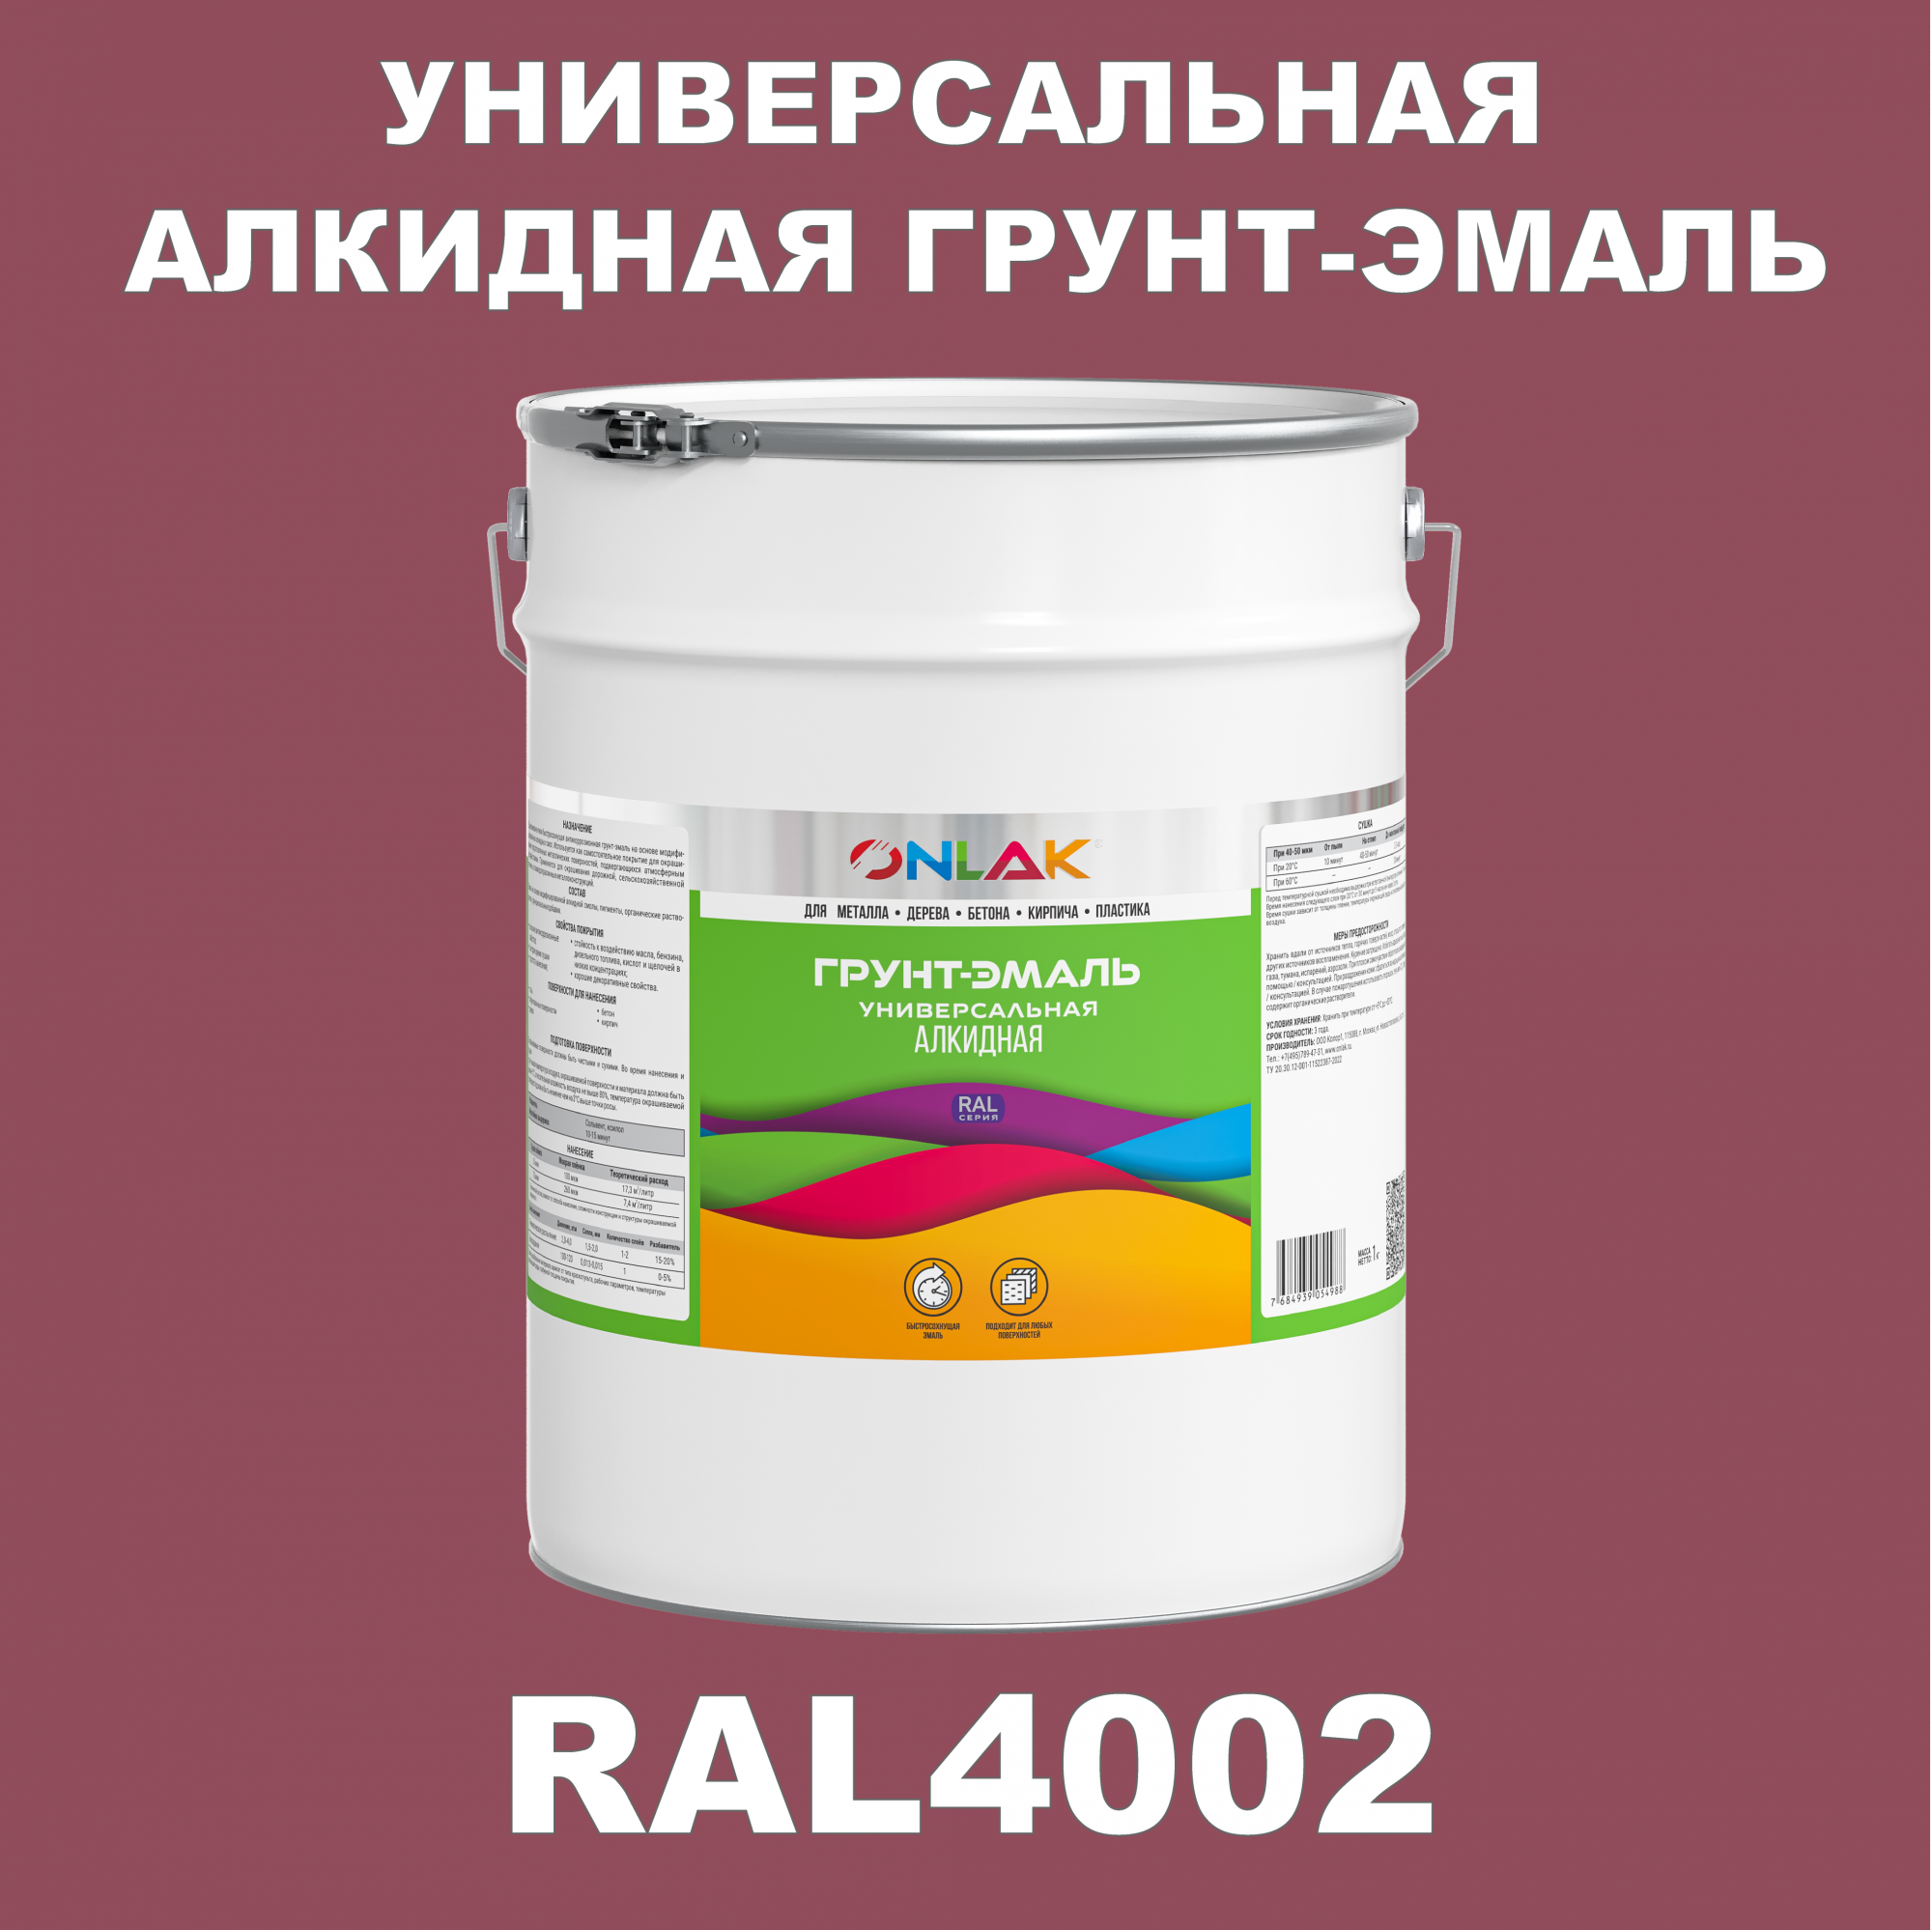 Грунт-эмаль ONLAK 1К RAL4002 антикоррозионная алкидная по металлу по ржавчине 20 кг антикоррозионная грунт эмаль onlak ral 4008 фиолетовый 610 мл